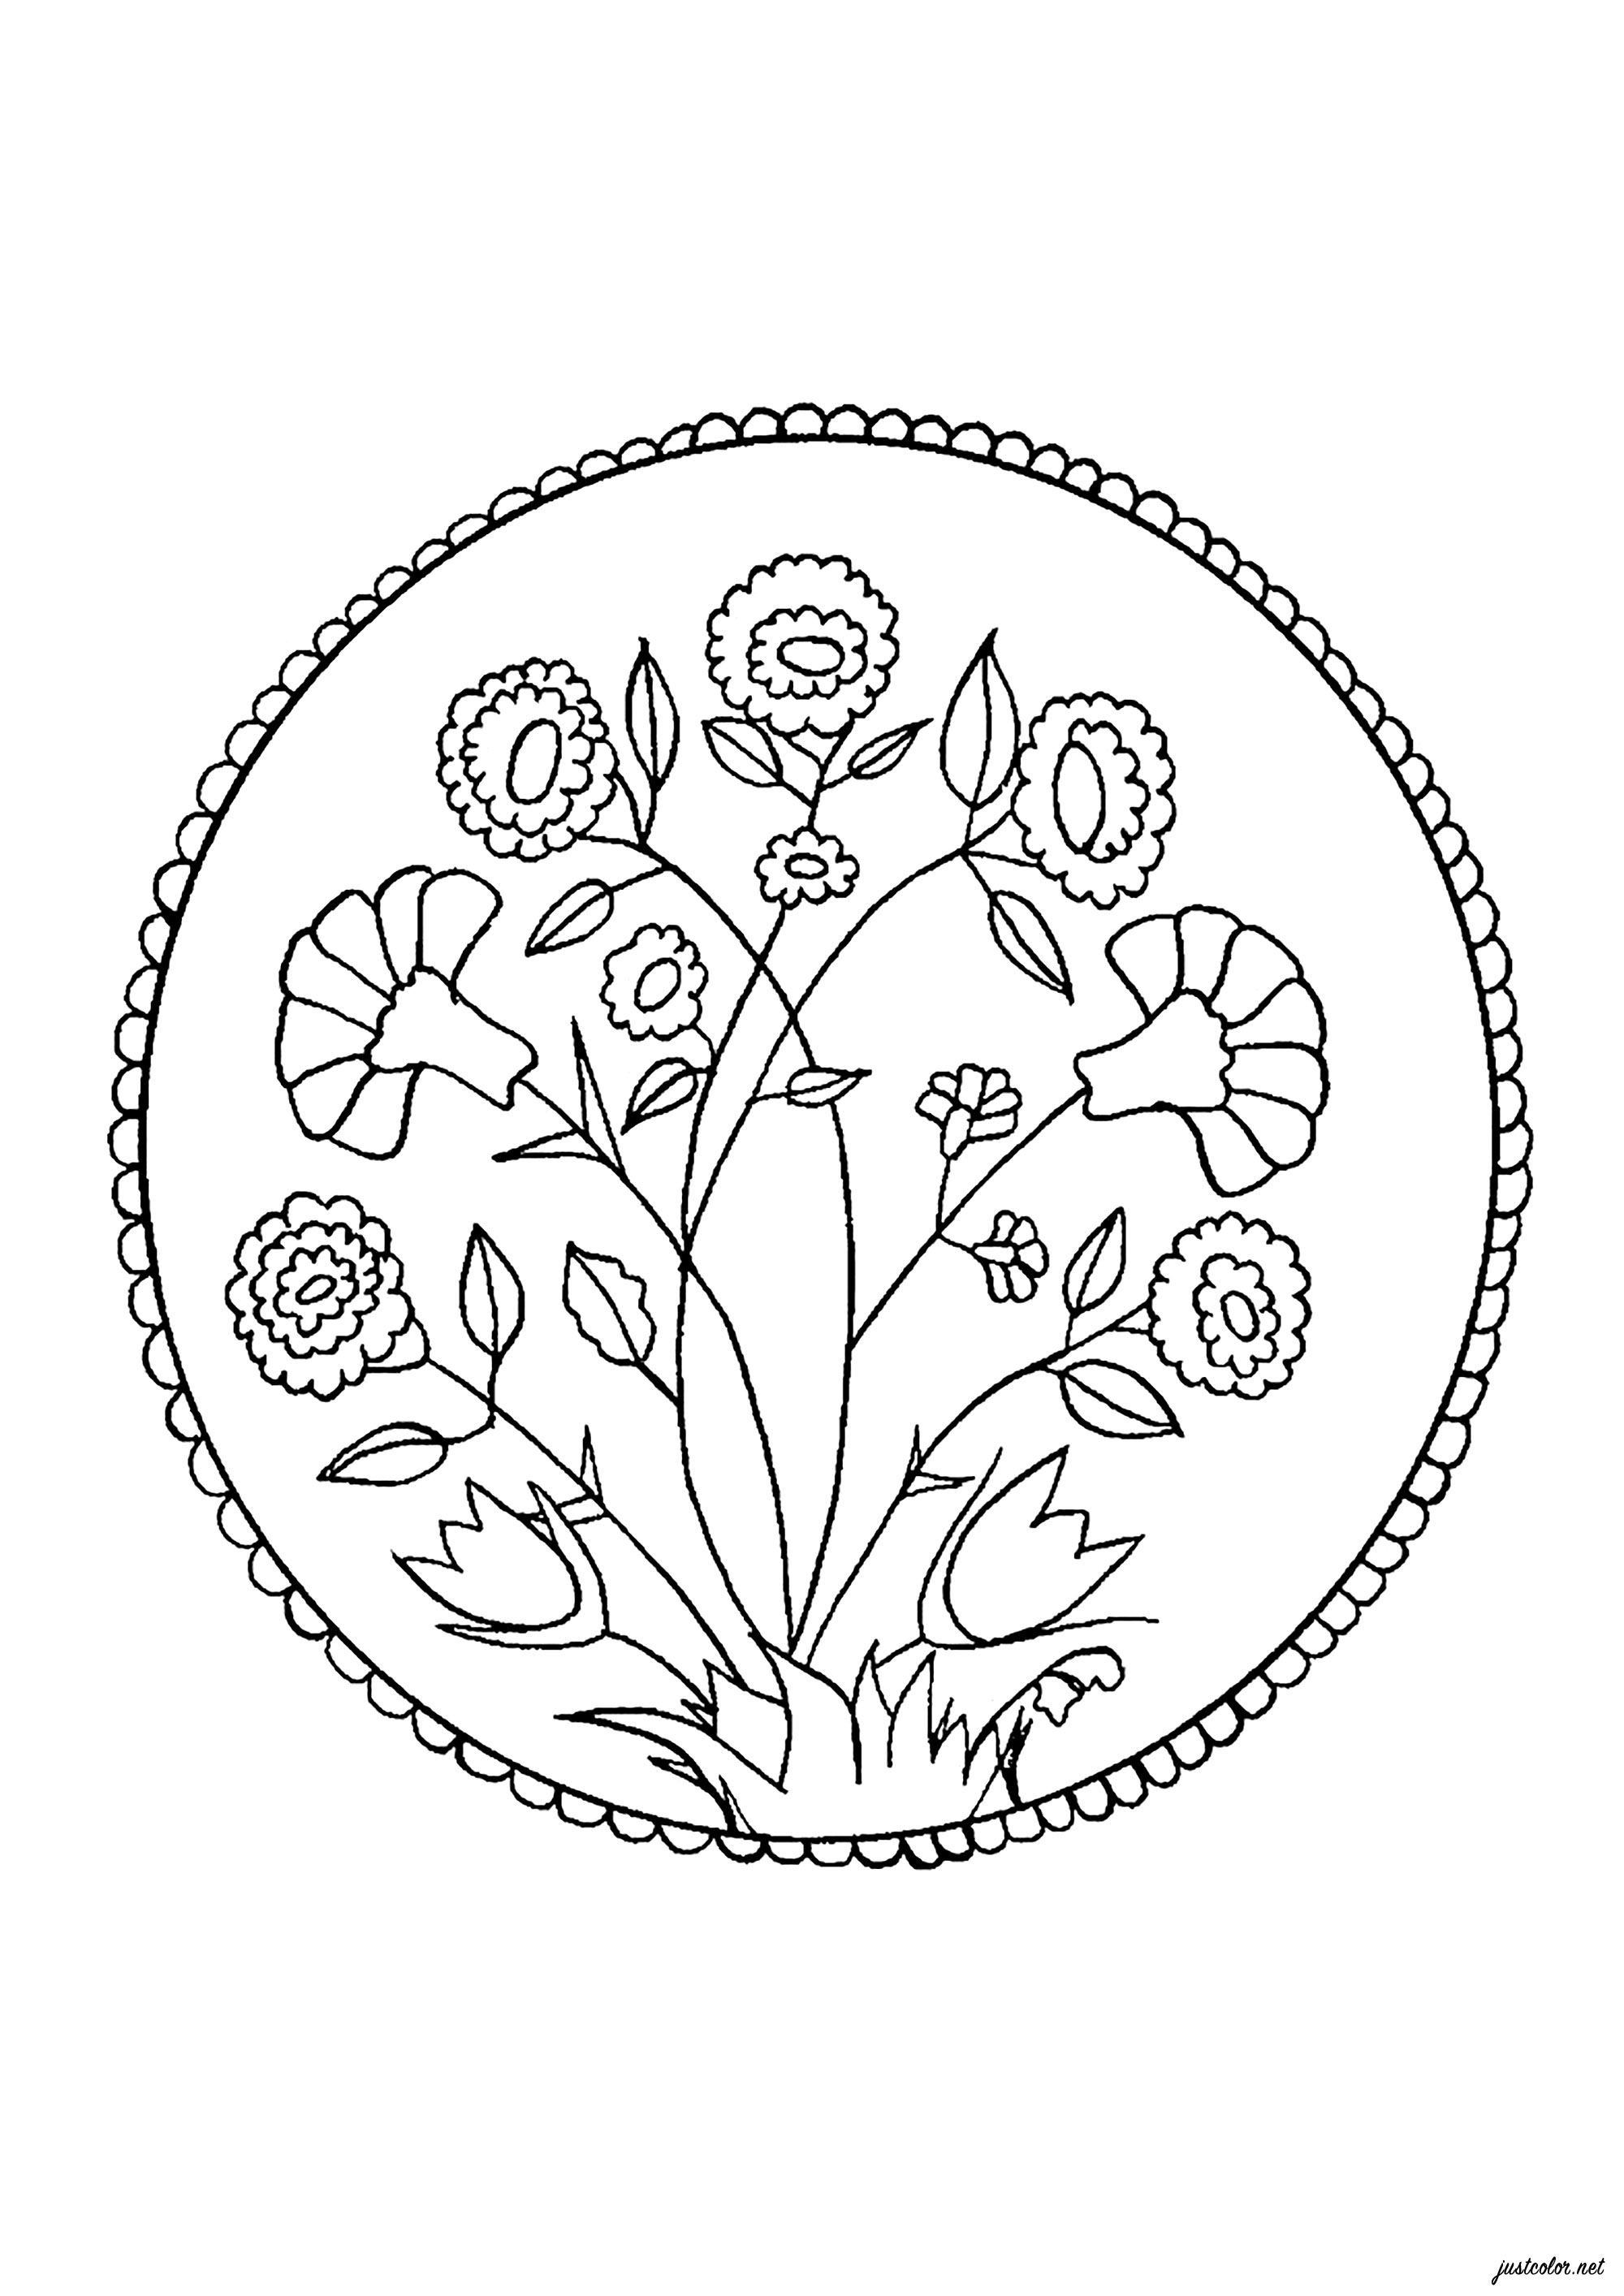 Coloración inspirada en un plato del siglo XV, Artista : Salomé T